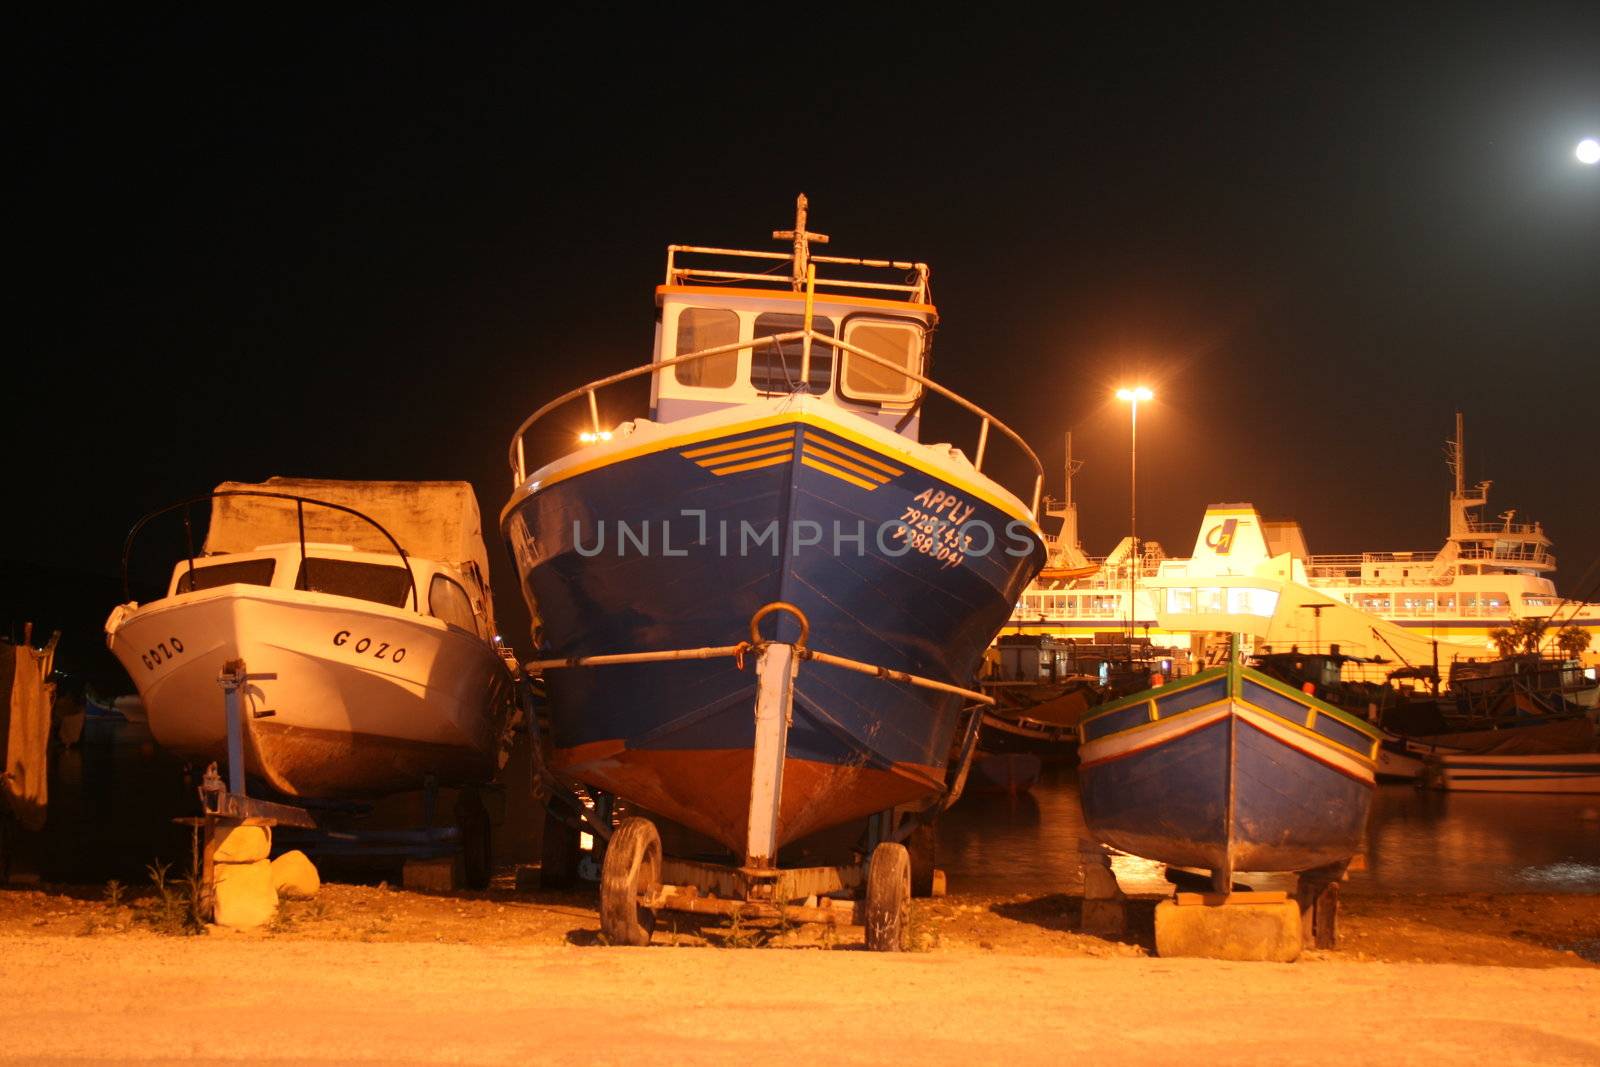 Maltese Boats by keki